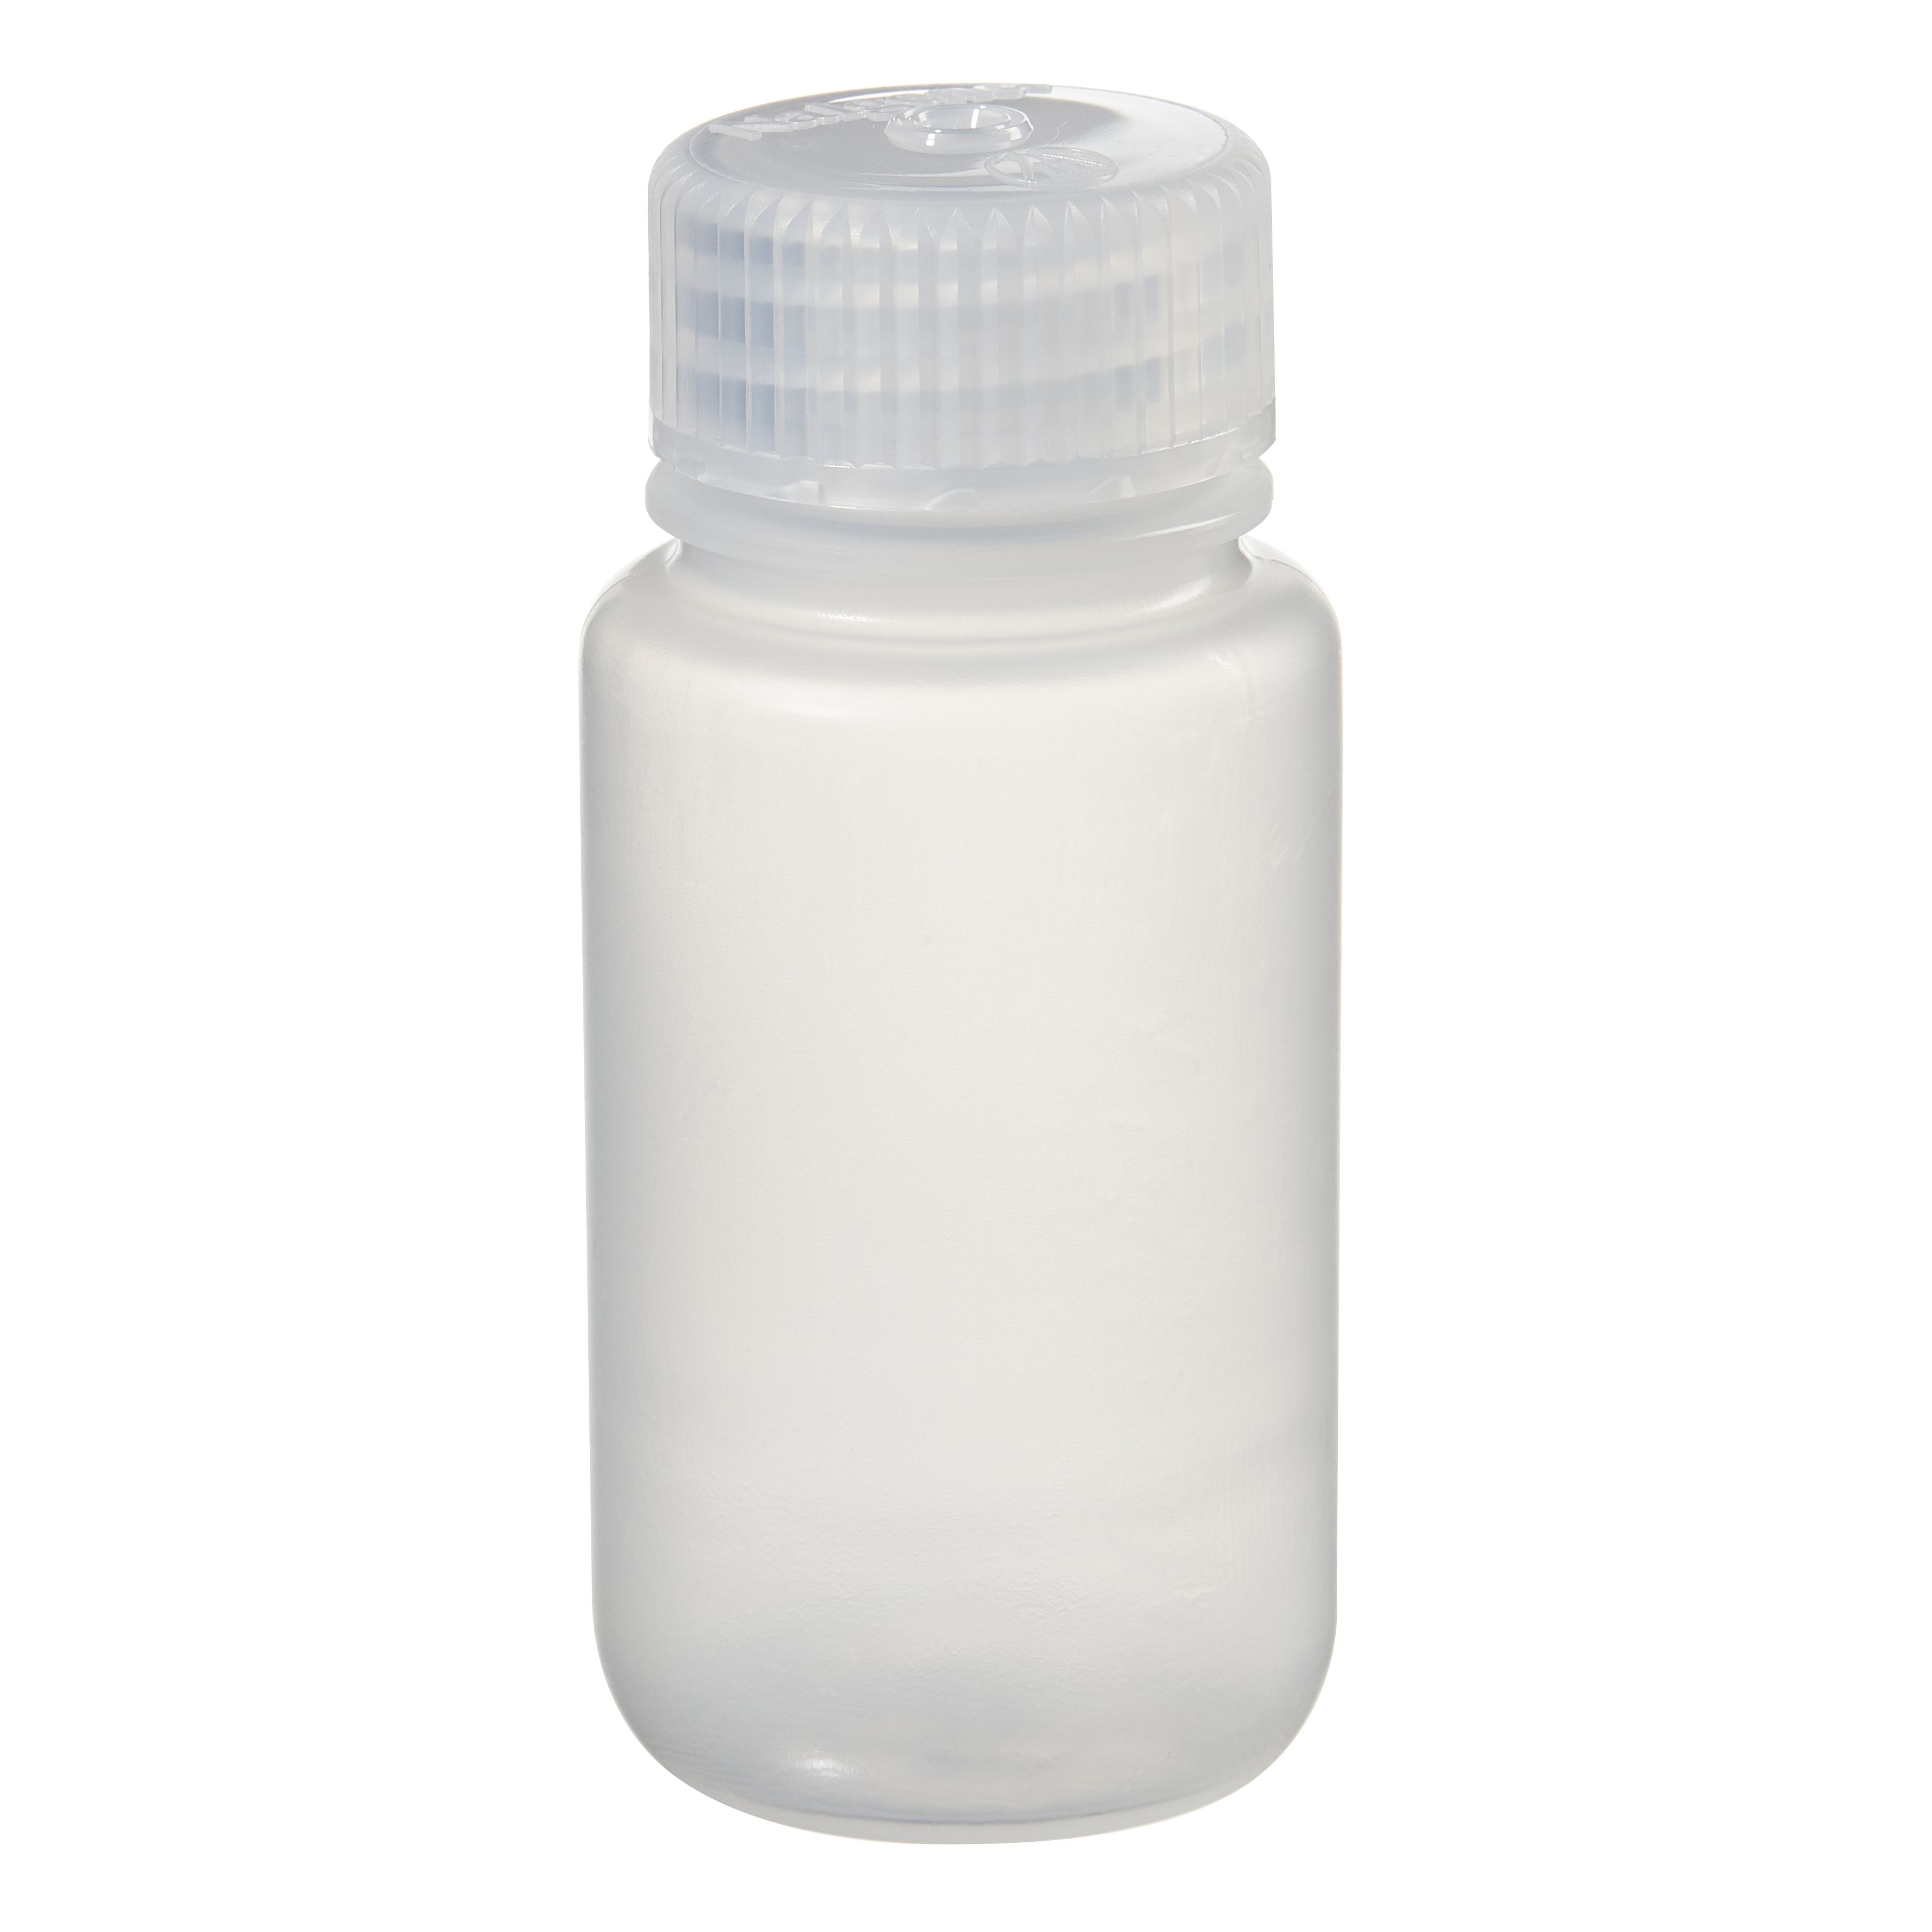 [Thermo Nalgene] 2105-0002 / 60mL Nalgene Wide-Mouth Lab Quality PPCO Bottle